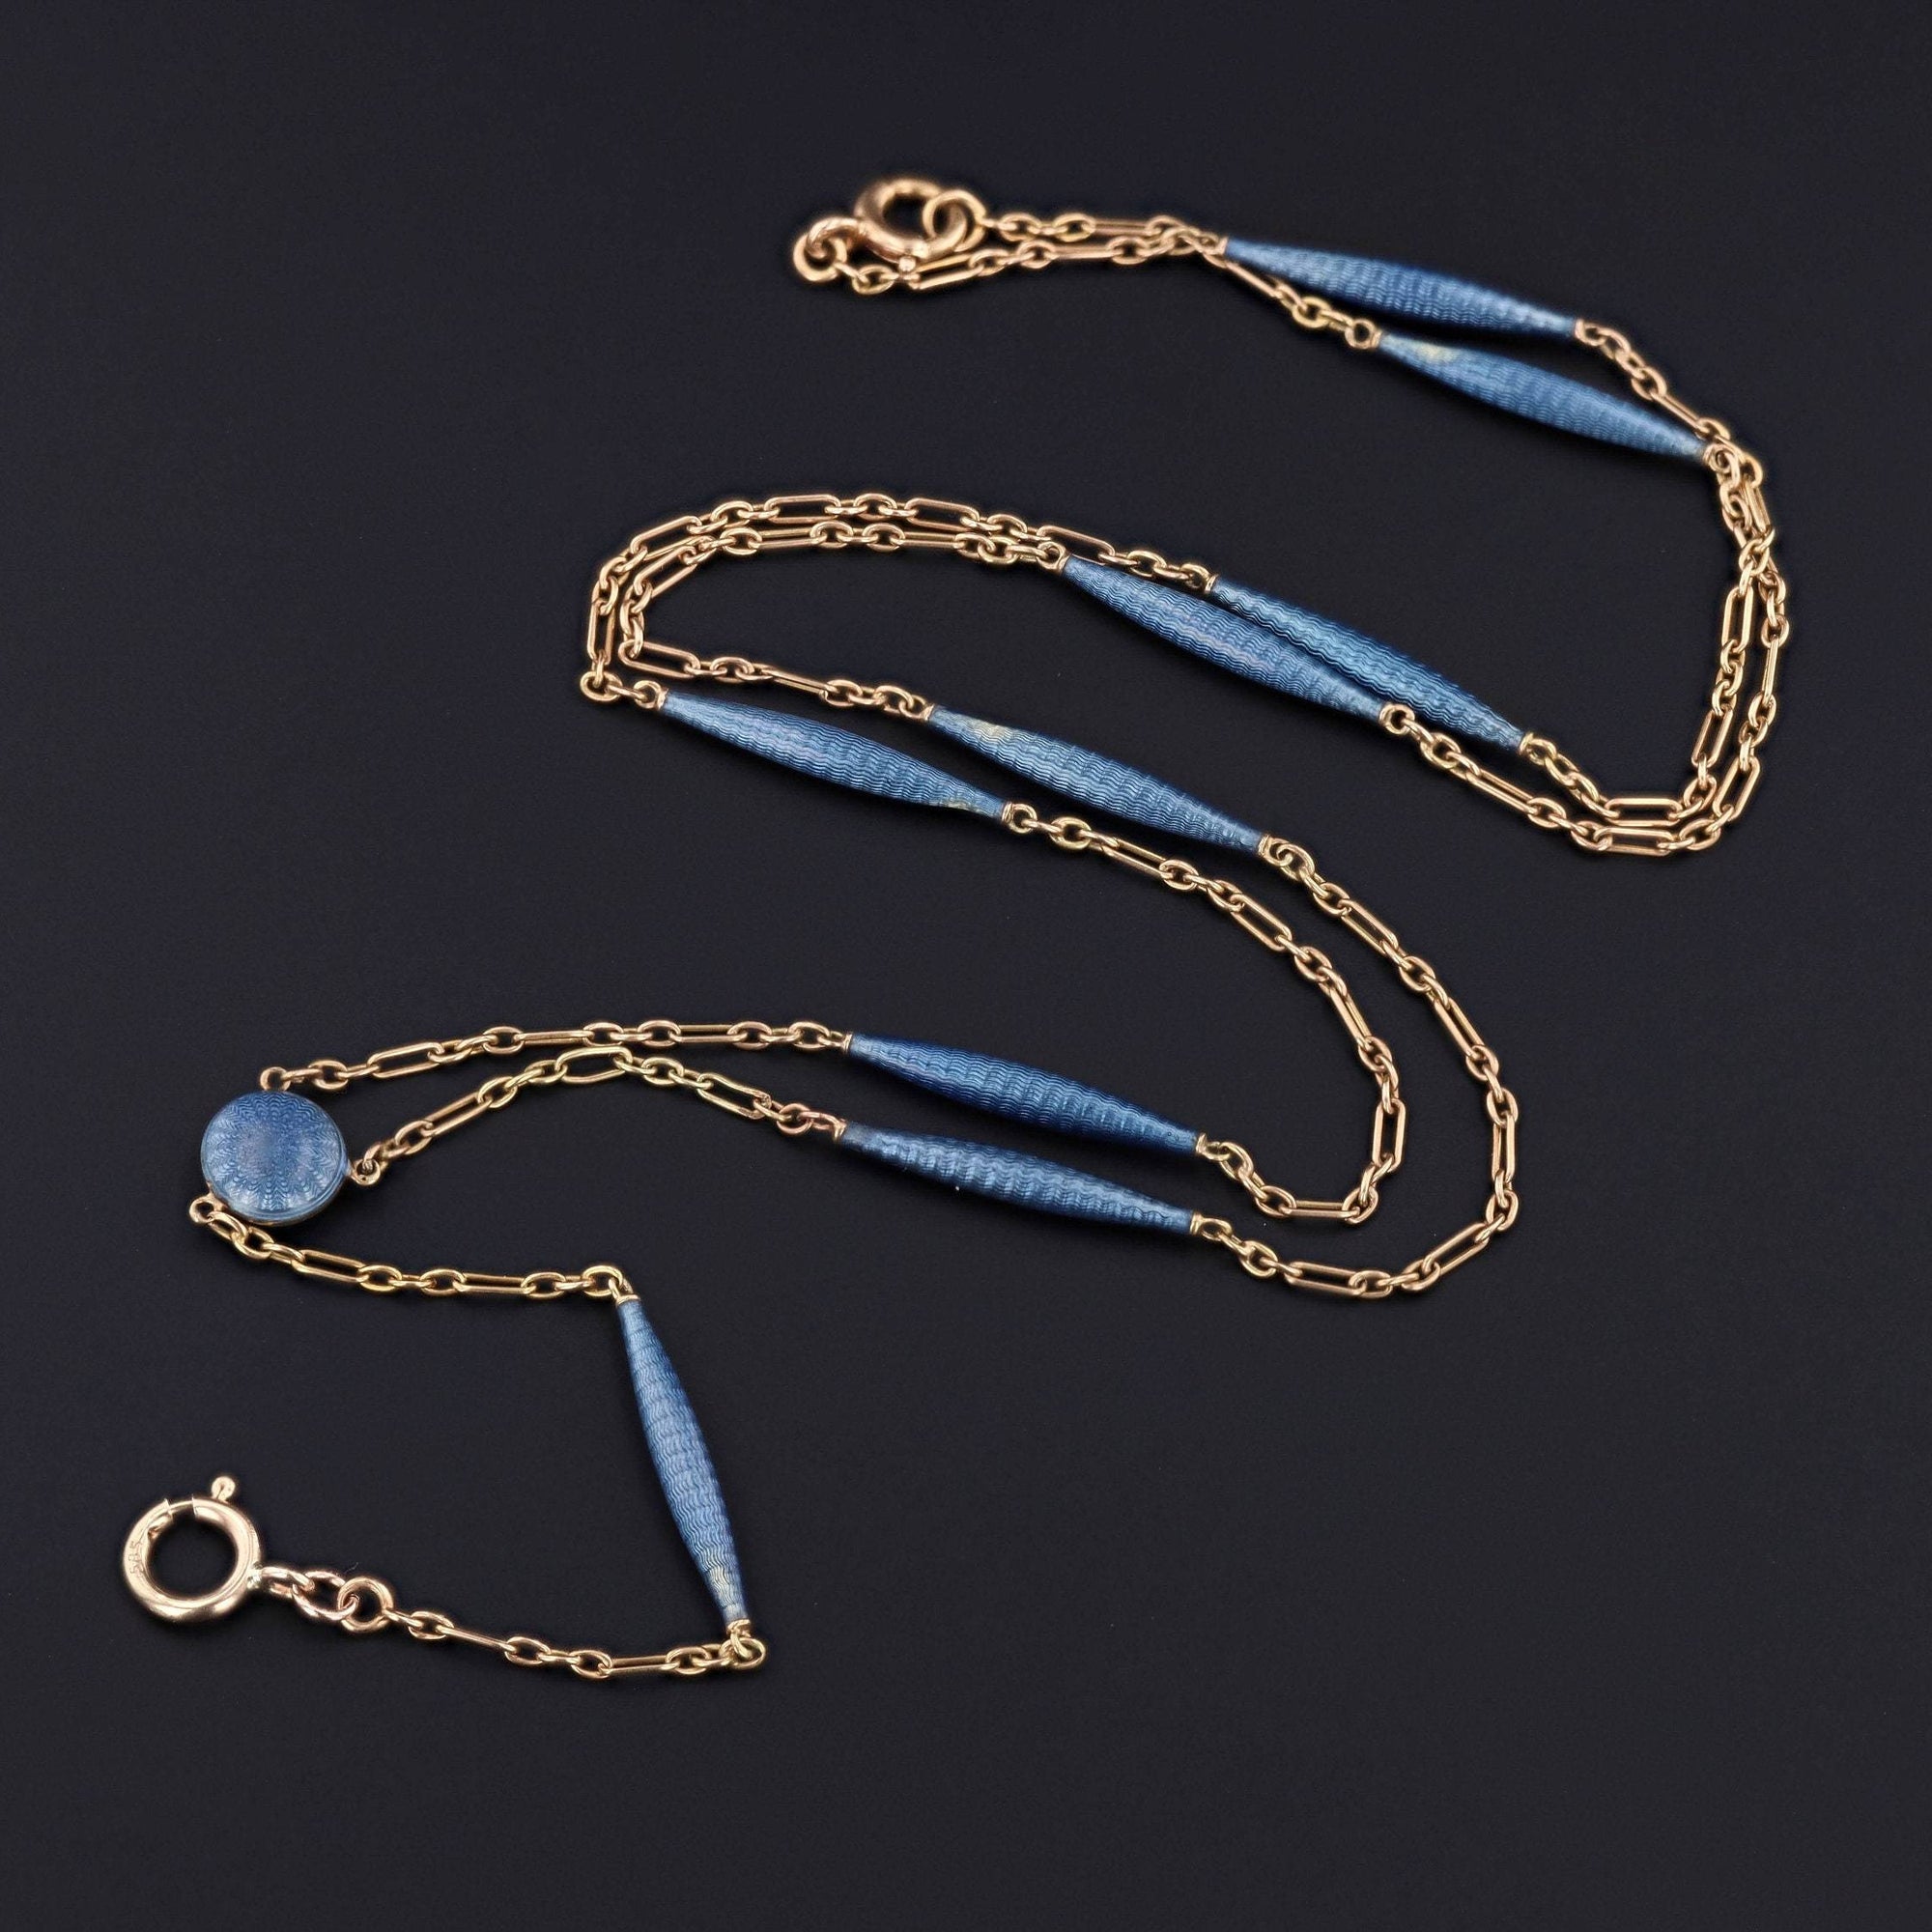 Antique Enamel Watch Chain | 14k Gold & Blue Enamel Chain 